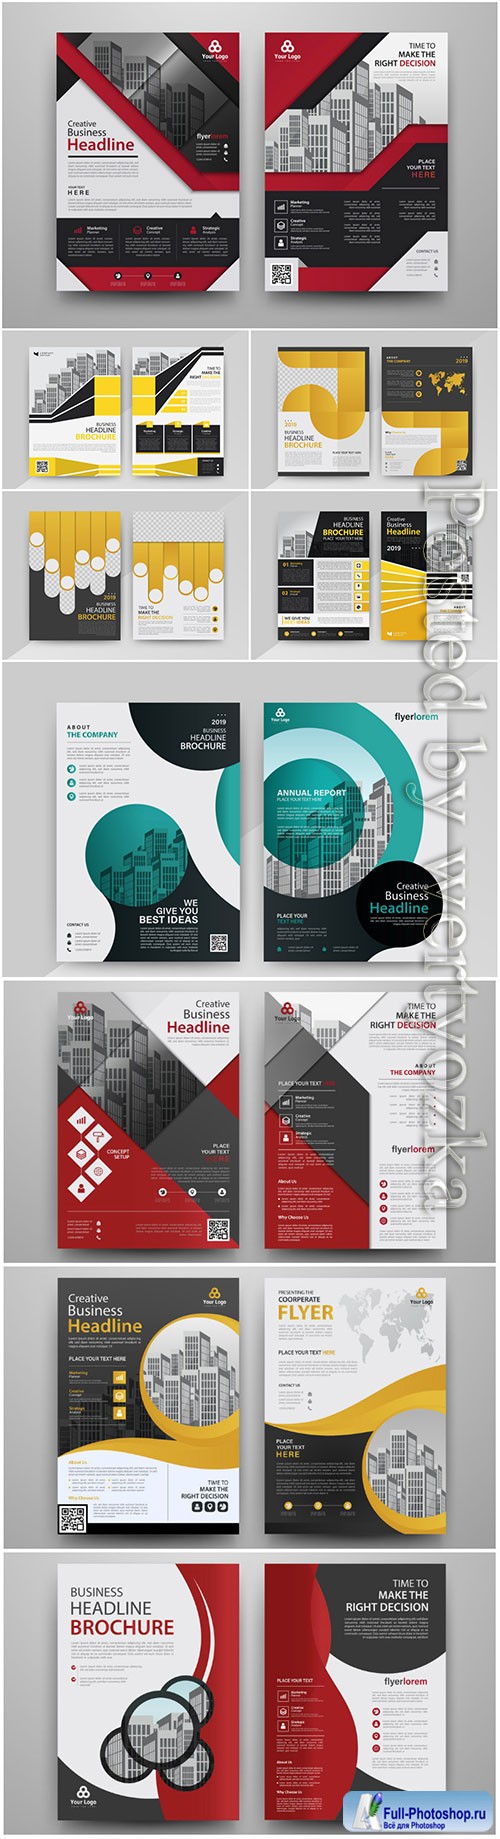 Vector modern brochure design template